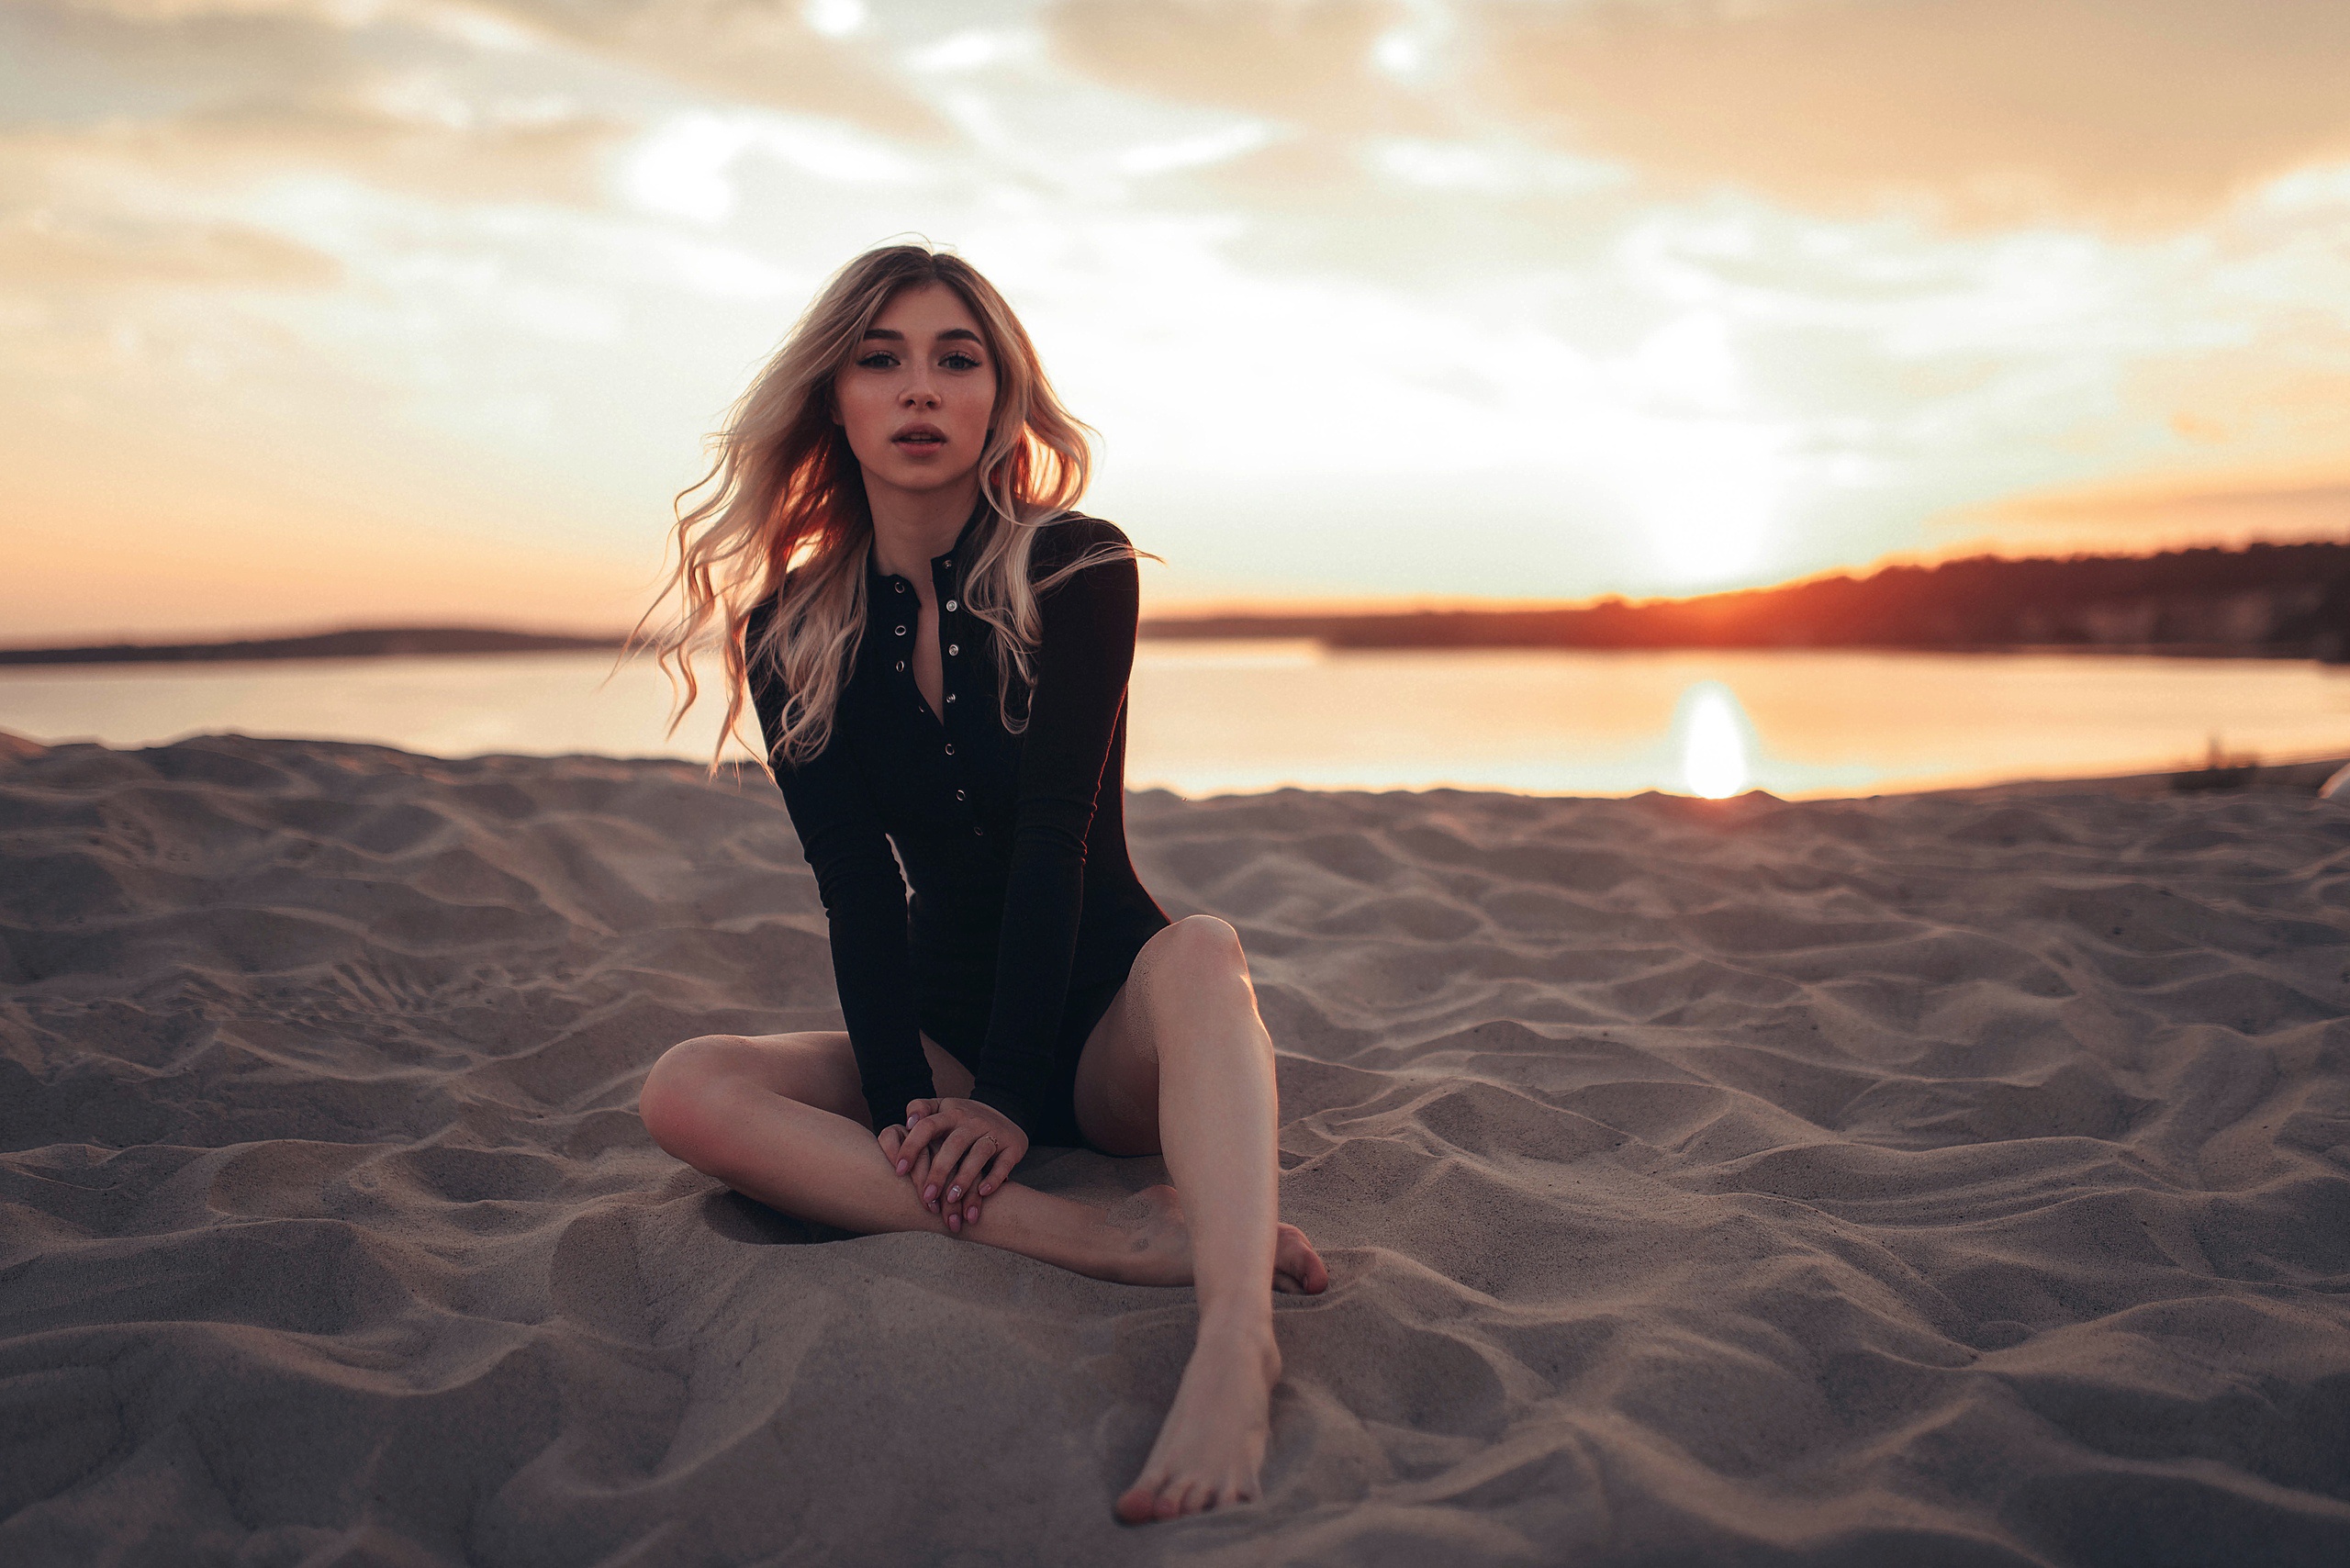 Anna Carpenter Sunset Beach Women Model Blonde Barefoot Sand Women Outdoors Victoria Rusko 2560x1708